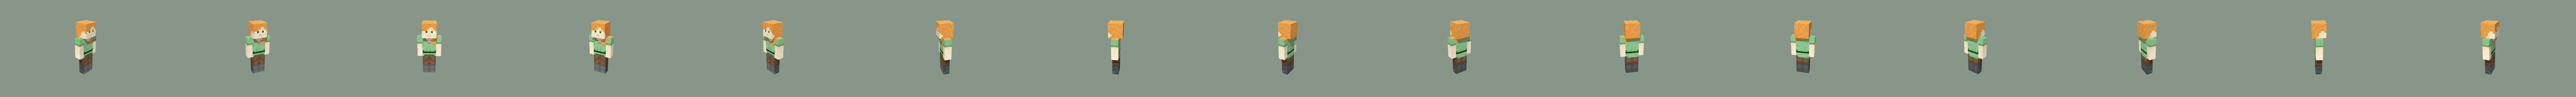 minecraft slenderman - Download Free 3D model by JohnElkes (@JohnElkes)  [ef8d874]